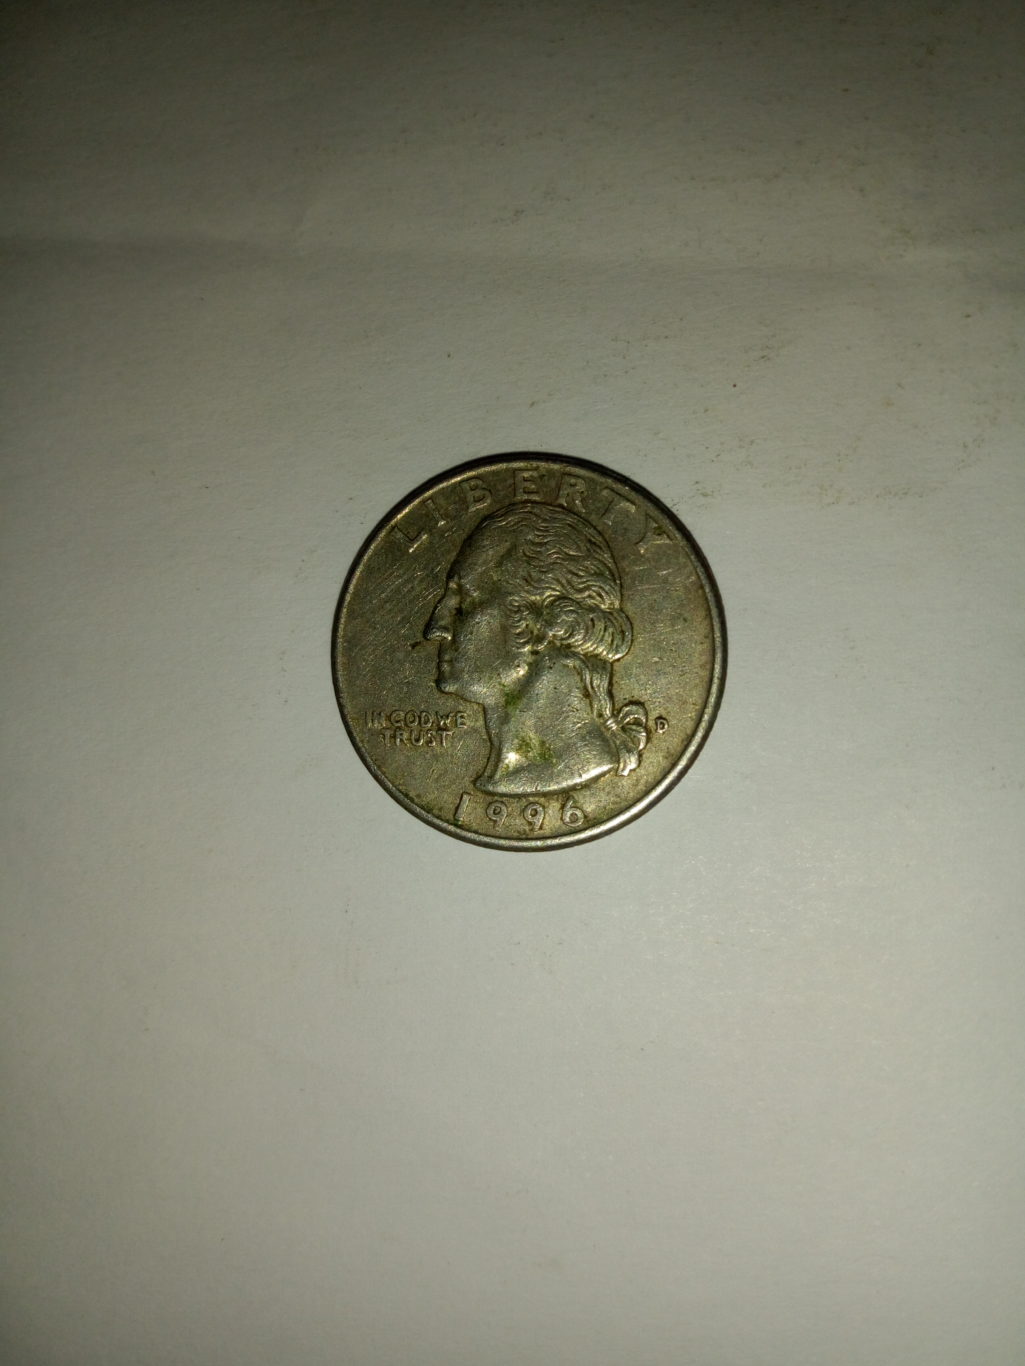 1996_united States of america quarter dollar